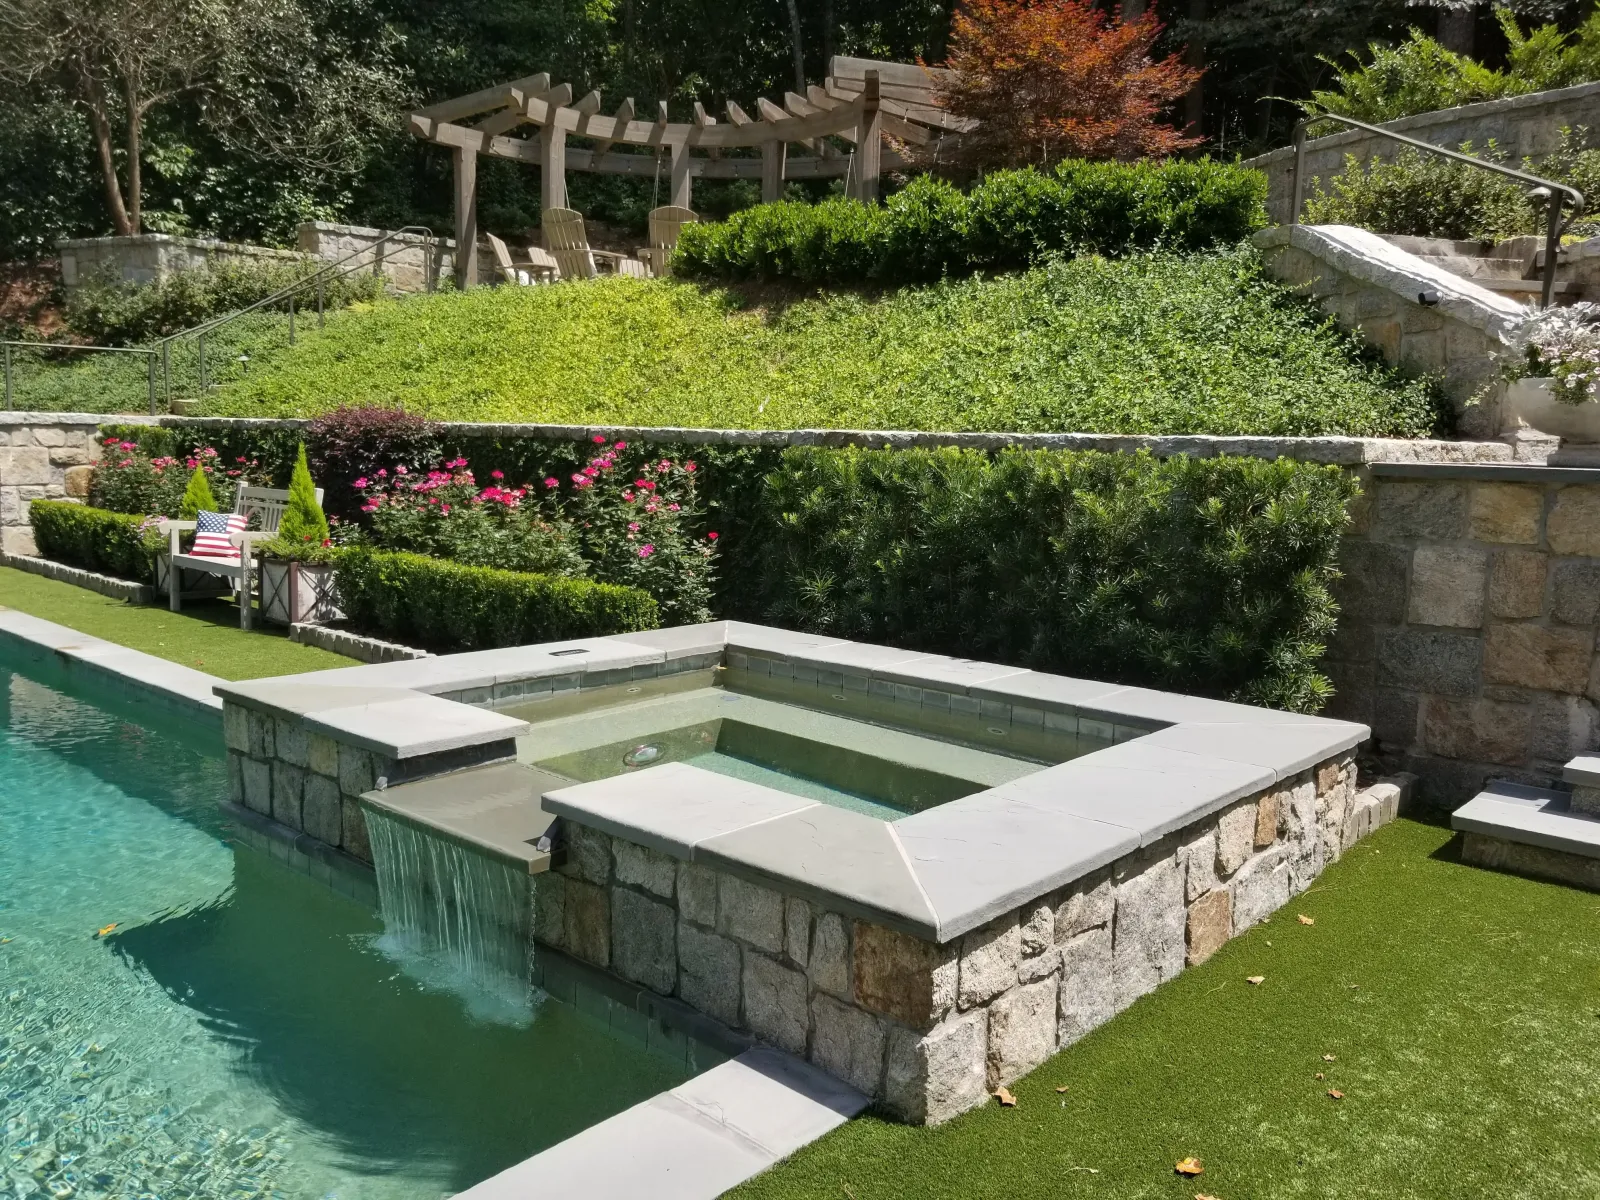 a pool in a backyard